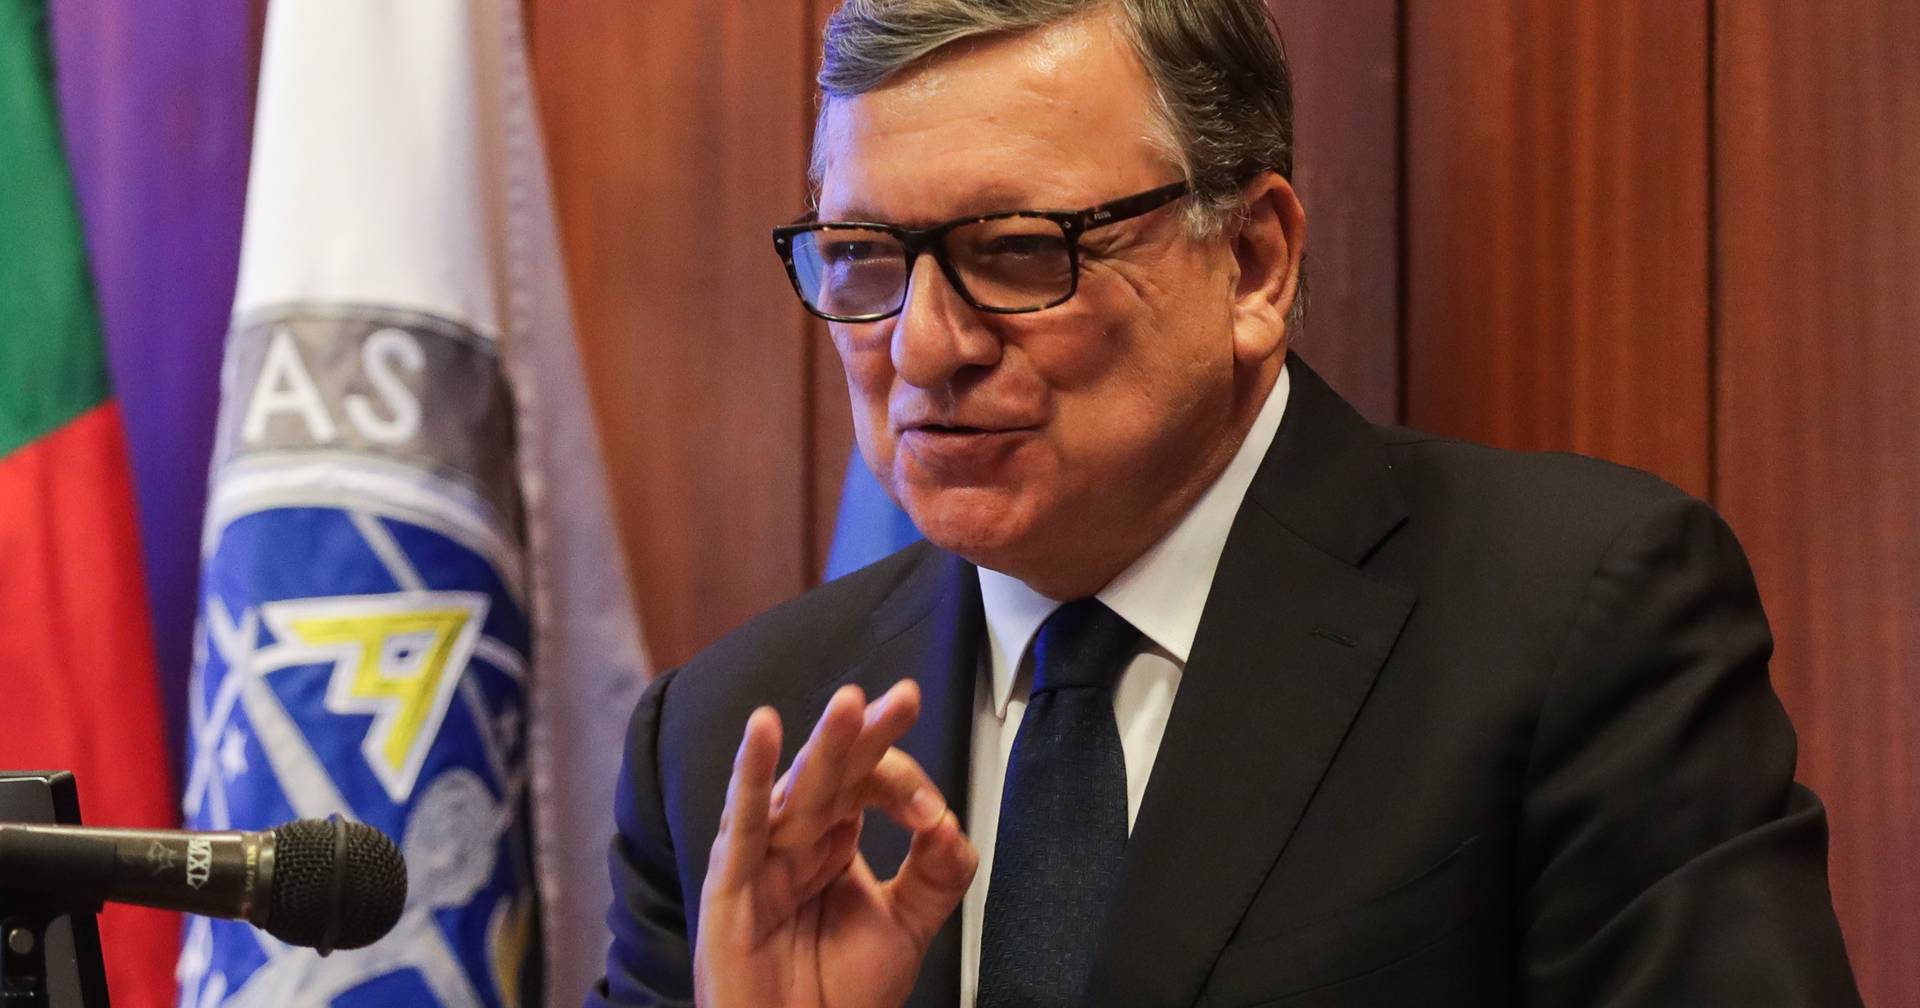 O elogio de Durão Barroso: Passos evitou 